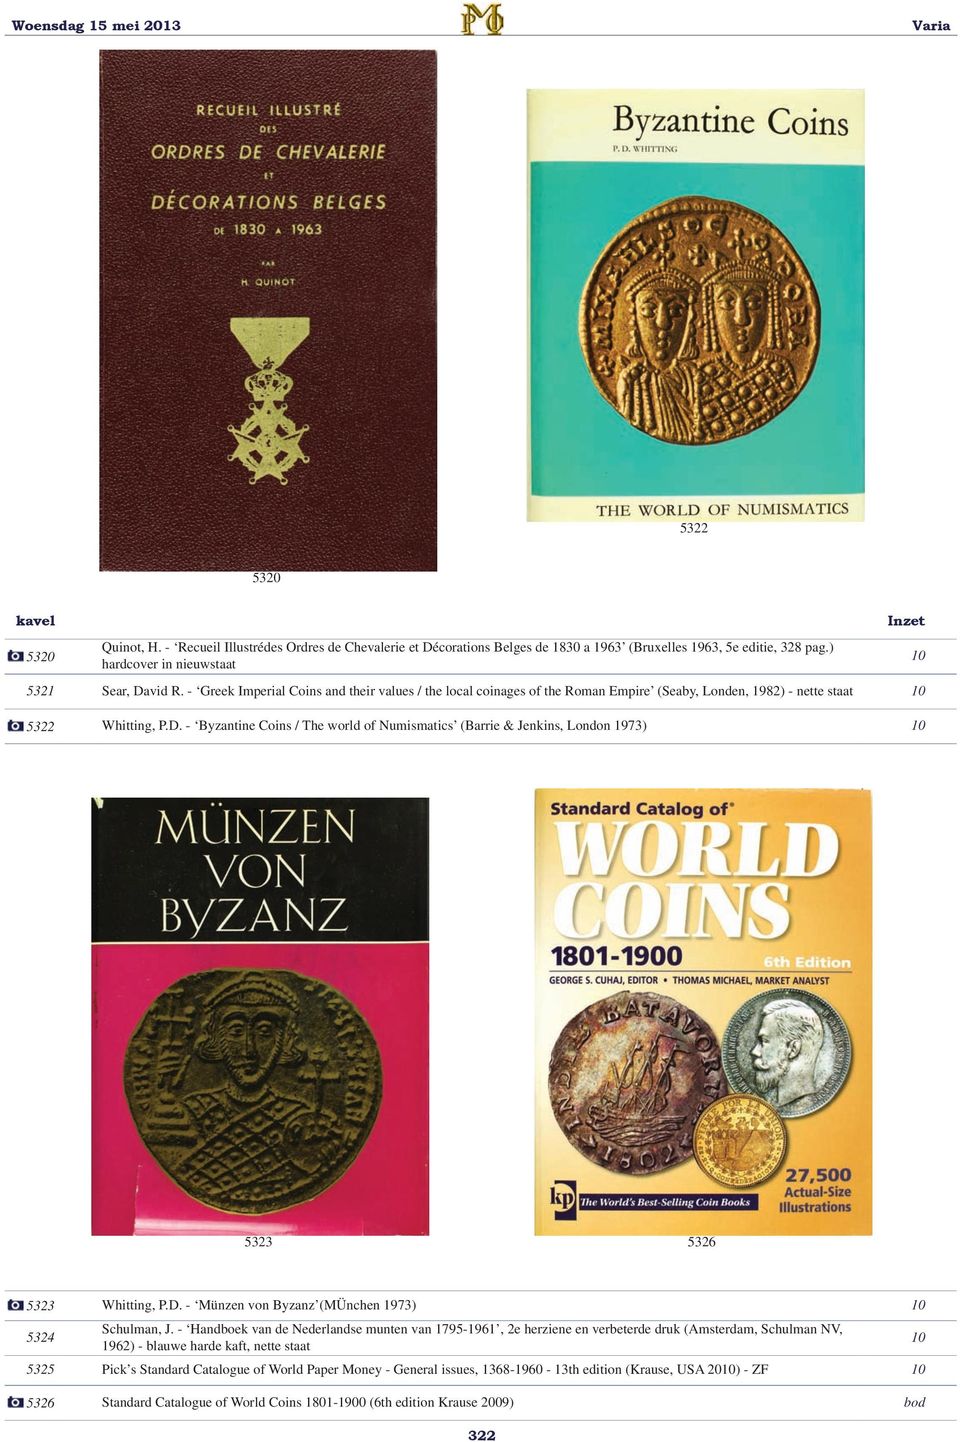 - Byzantine Coins / The world of Numismatics (Barrie & Jenkins, London 1973) 5323 5326 5323 Whitting, P.D. - Münzen von Byzanz (MÜnchen 1973) 5324 Schulman, J.